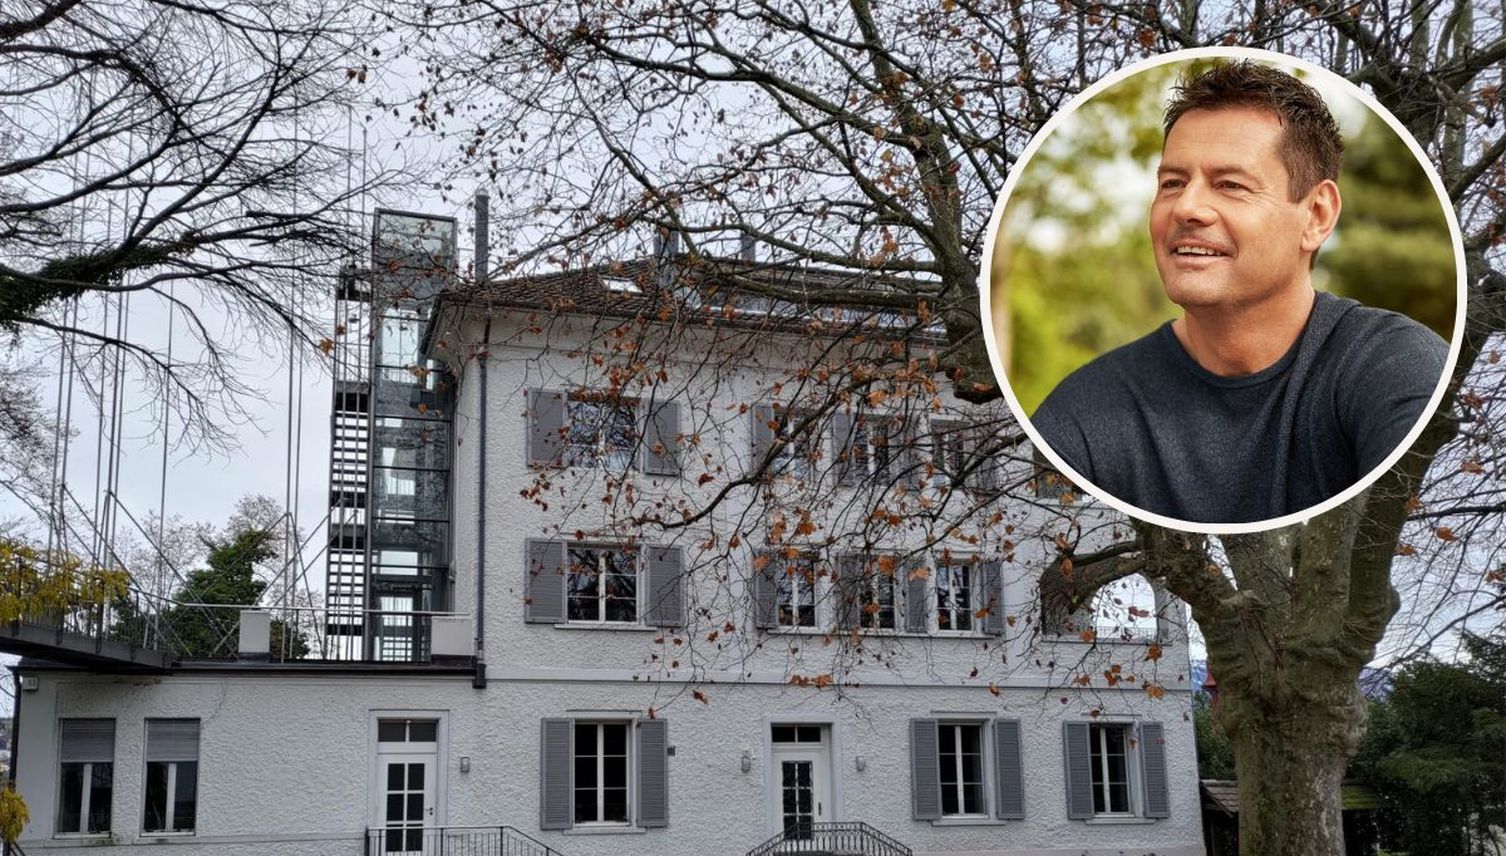 Villa Stutz: Hier wird bald tschechisches Vermögen verwaltet